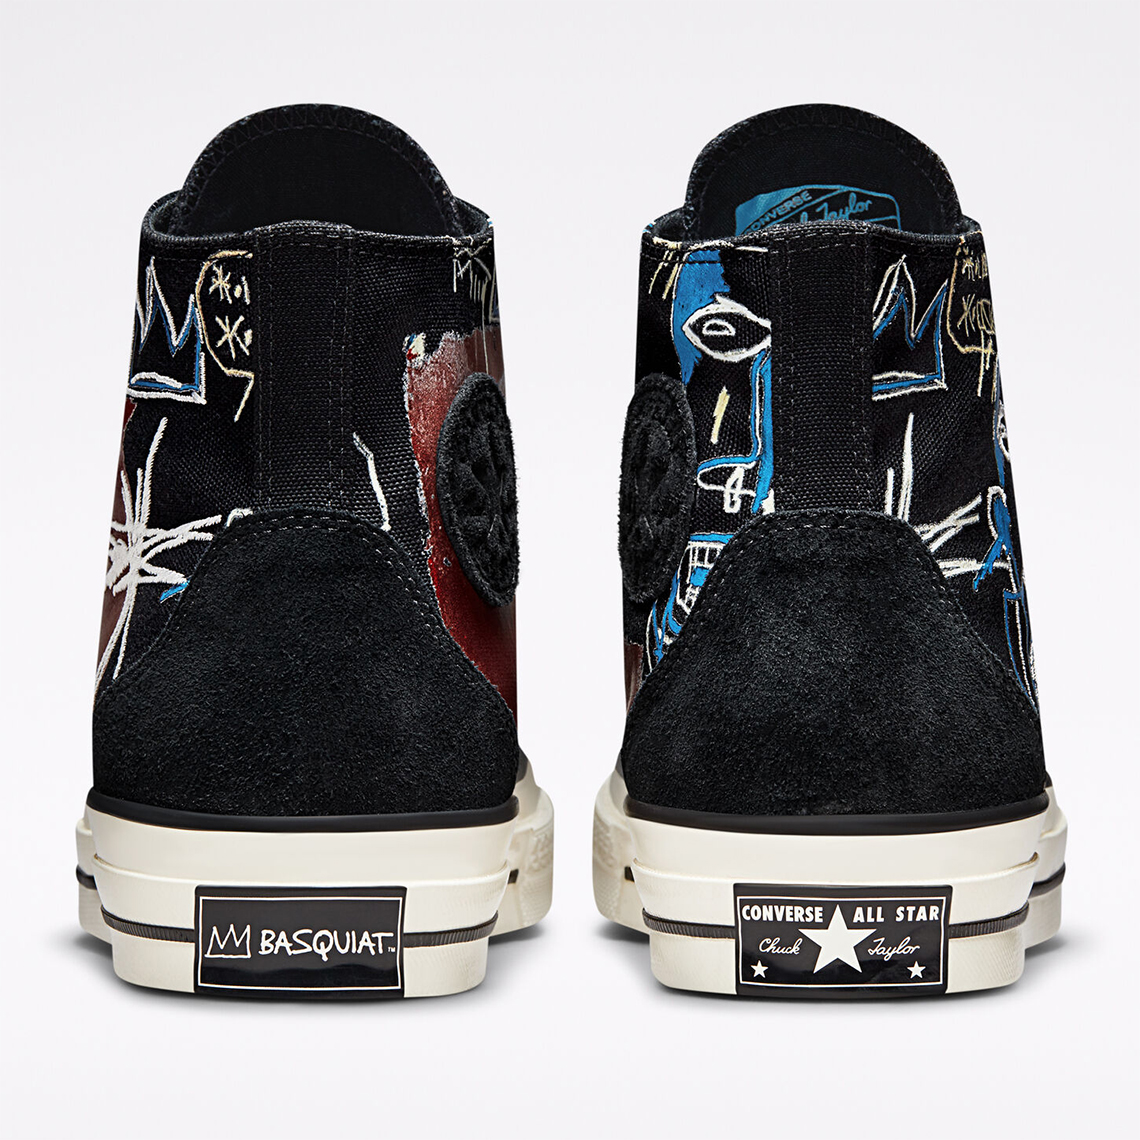 Basquiat Converse Chuck 70 172585c Release Date 1